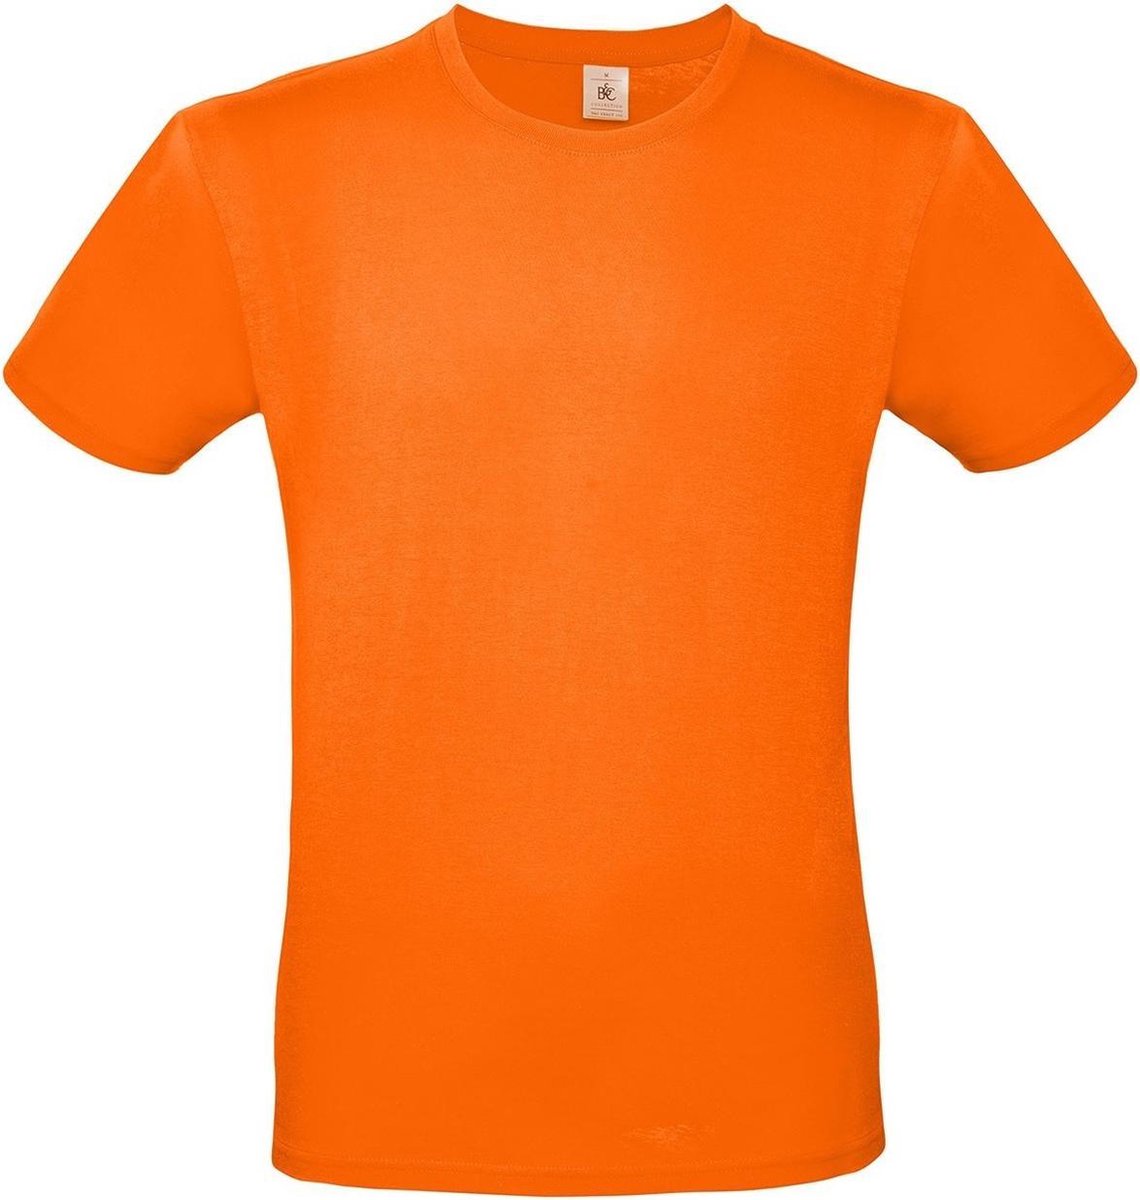 Set van 2x stuks oranje t-shirt met ronde hals voor heren - basic shirt - katoen - Koningsdag / Nederland supporter, maat: S (48)